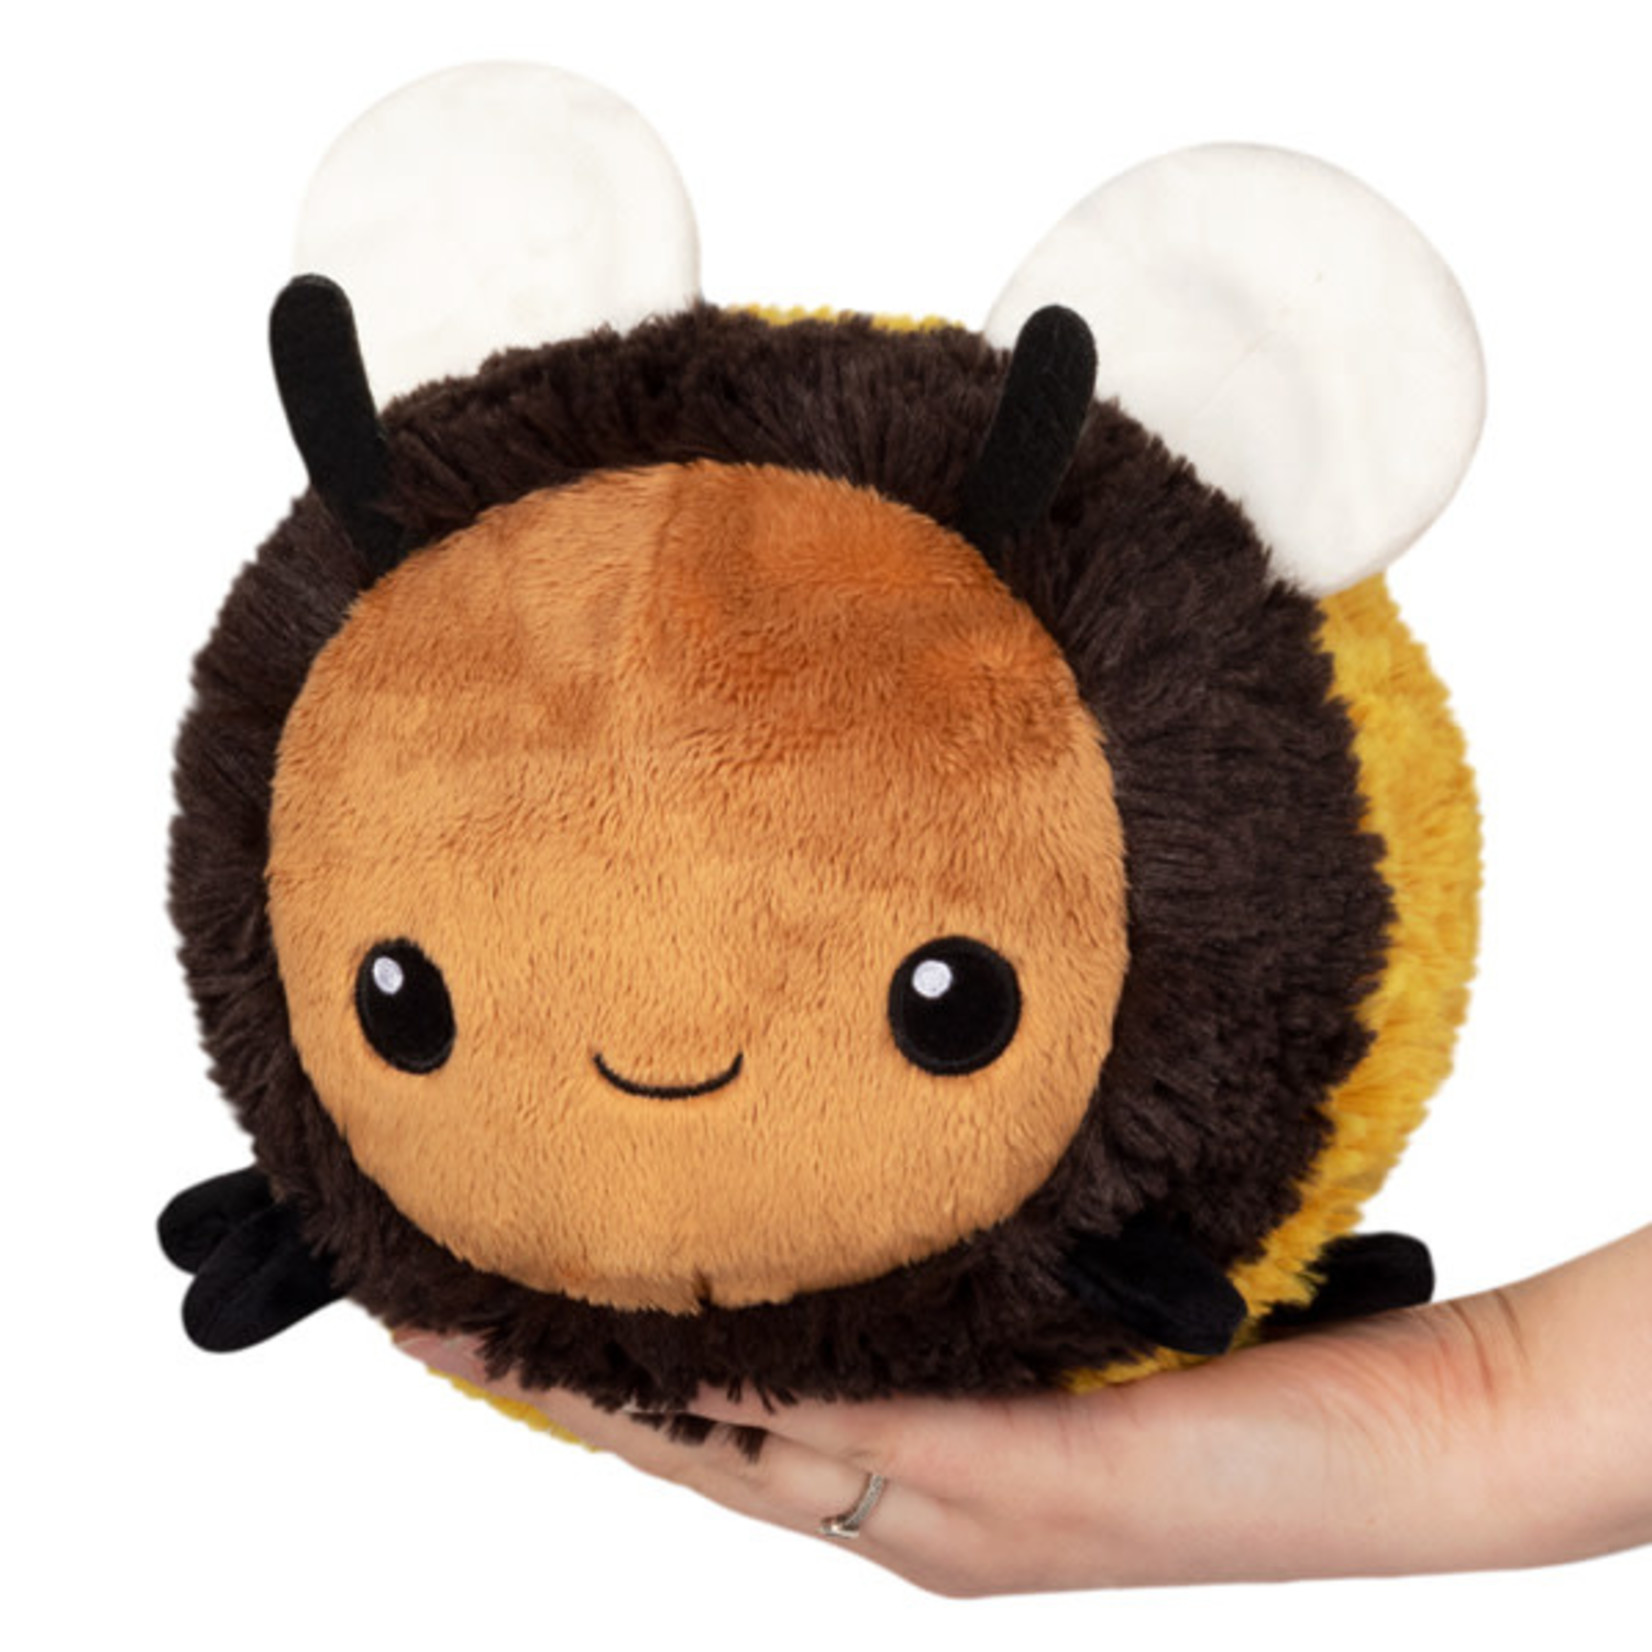 Squishable Mini Squishable Fuzzy Bumblebee